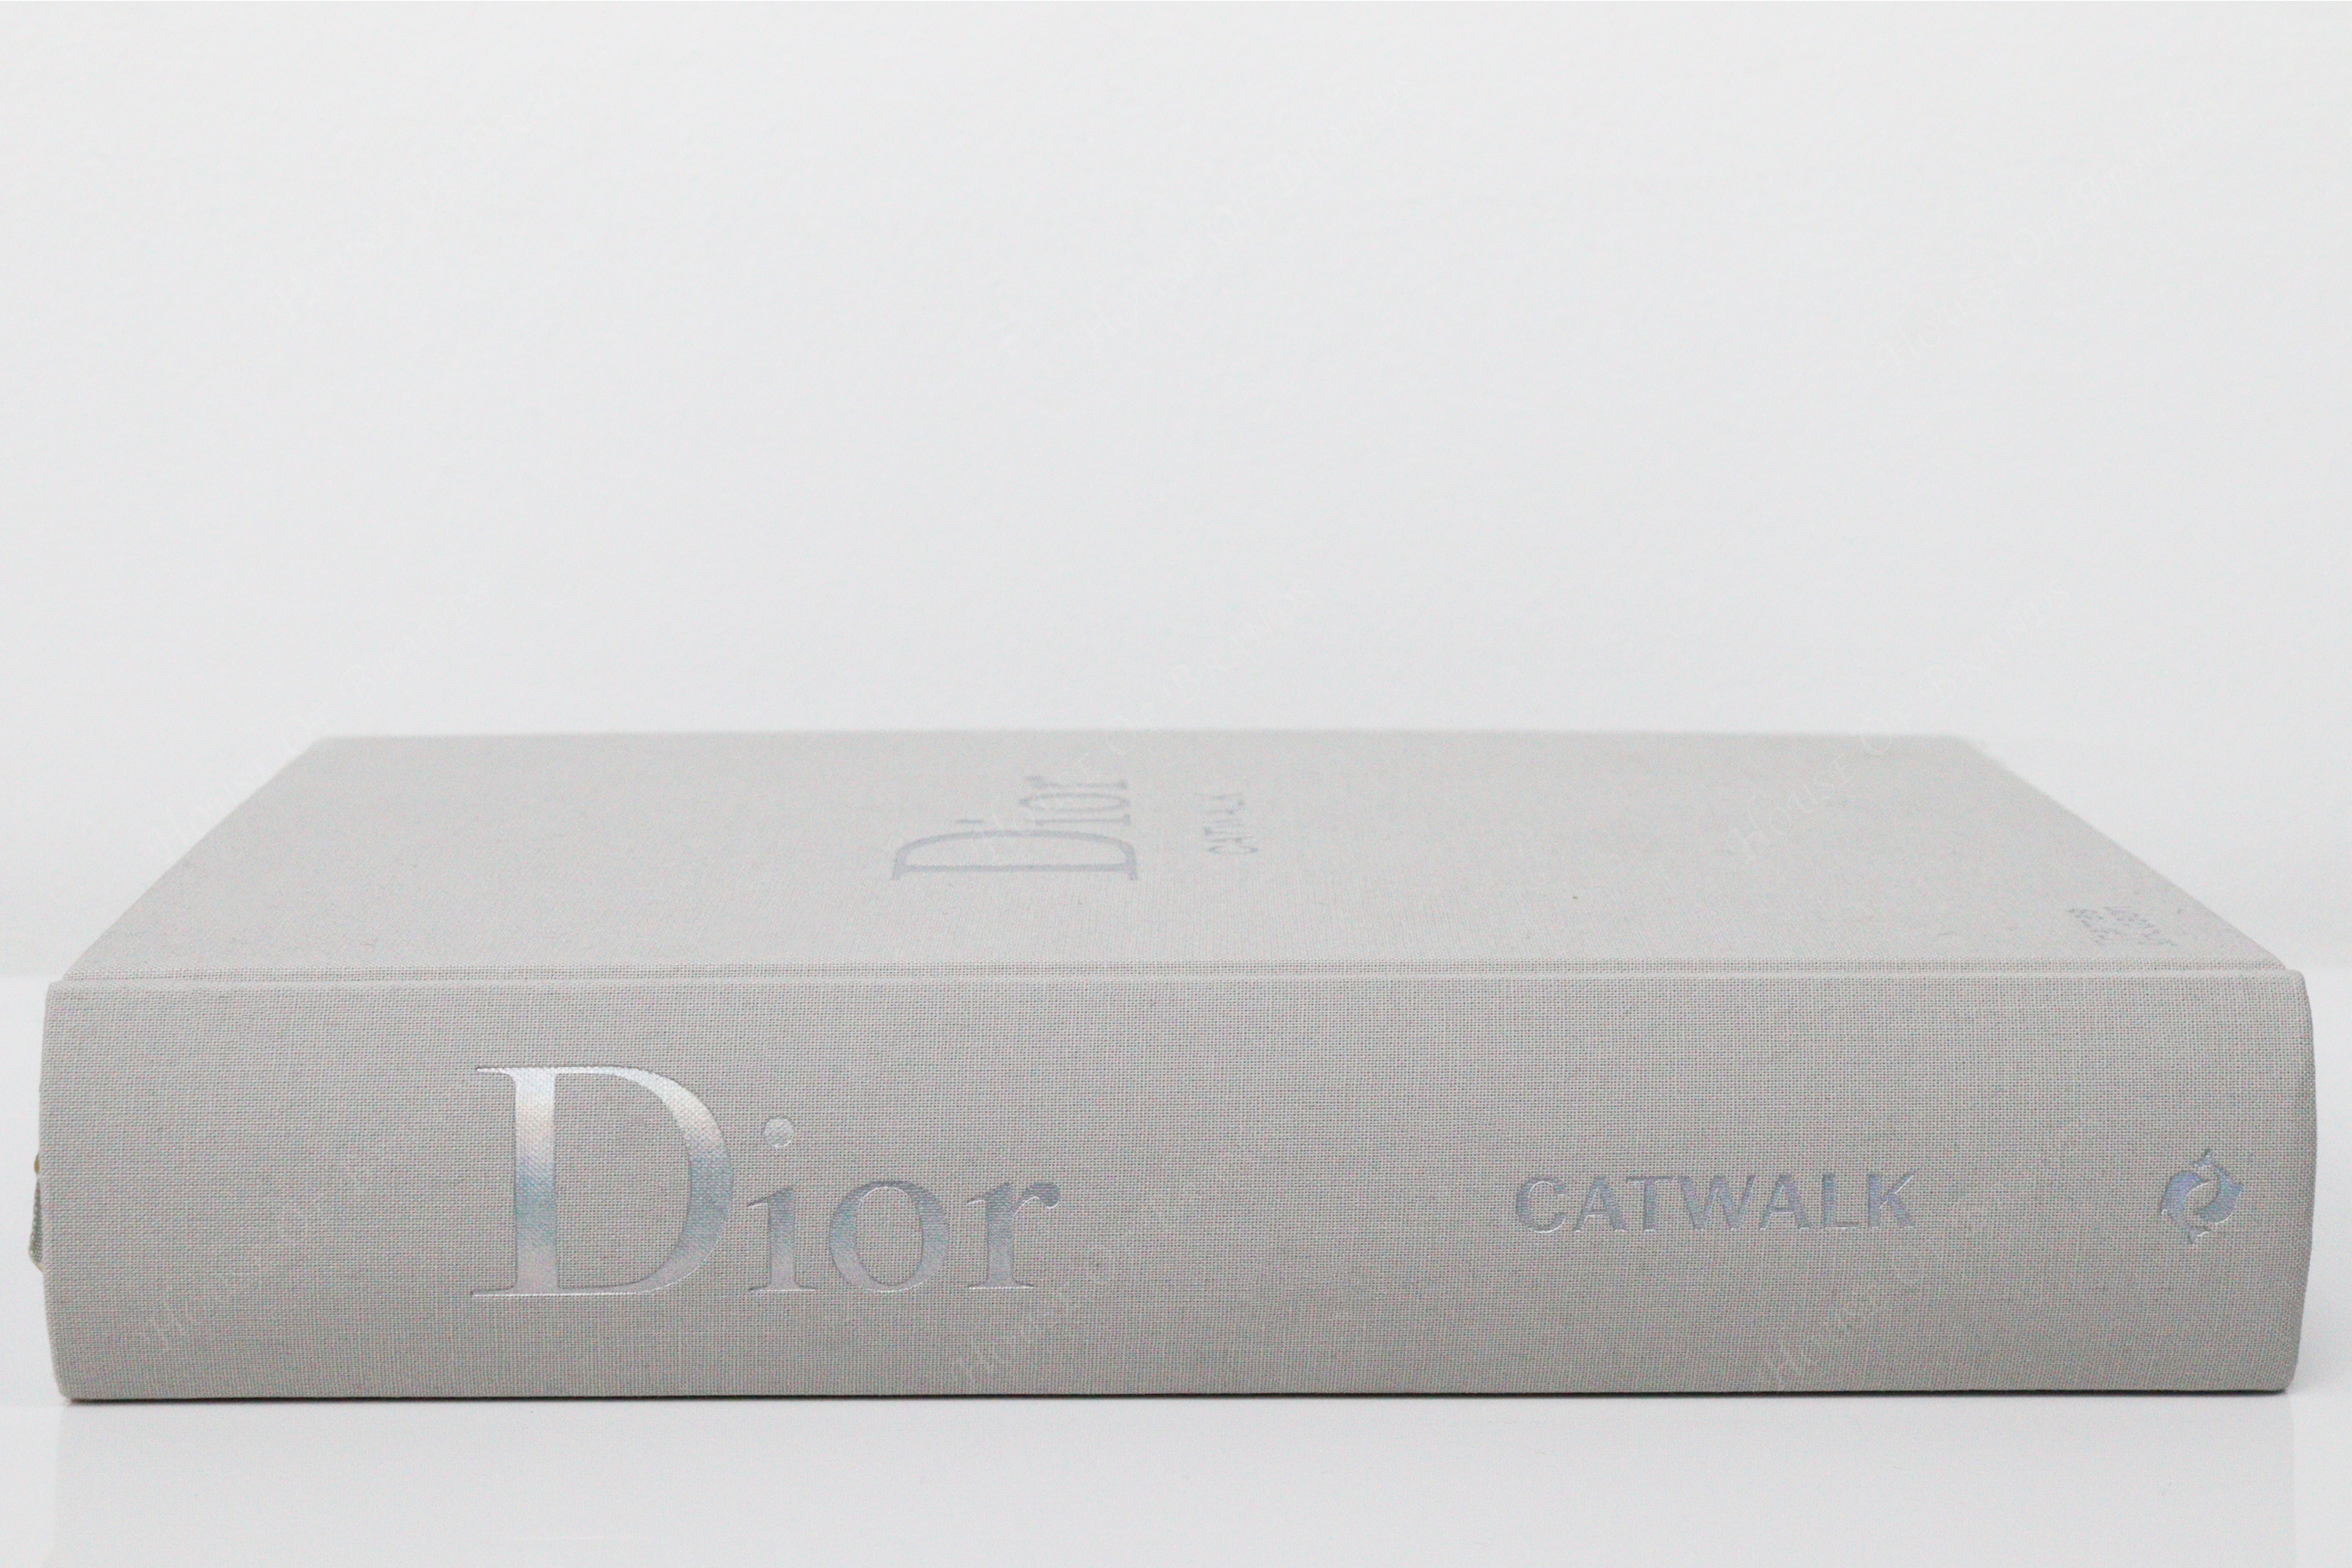 THAMES & HUDSON Dior Catwalk fashion book